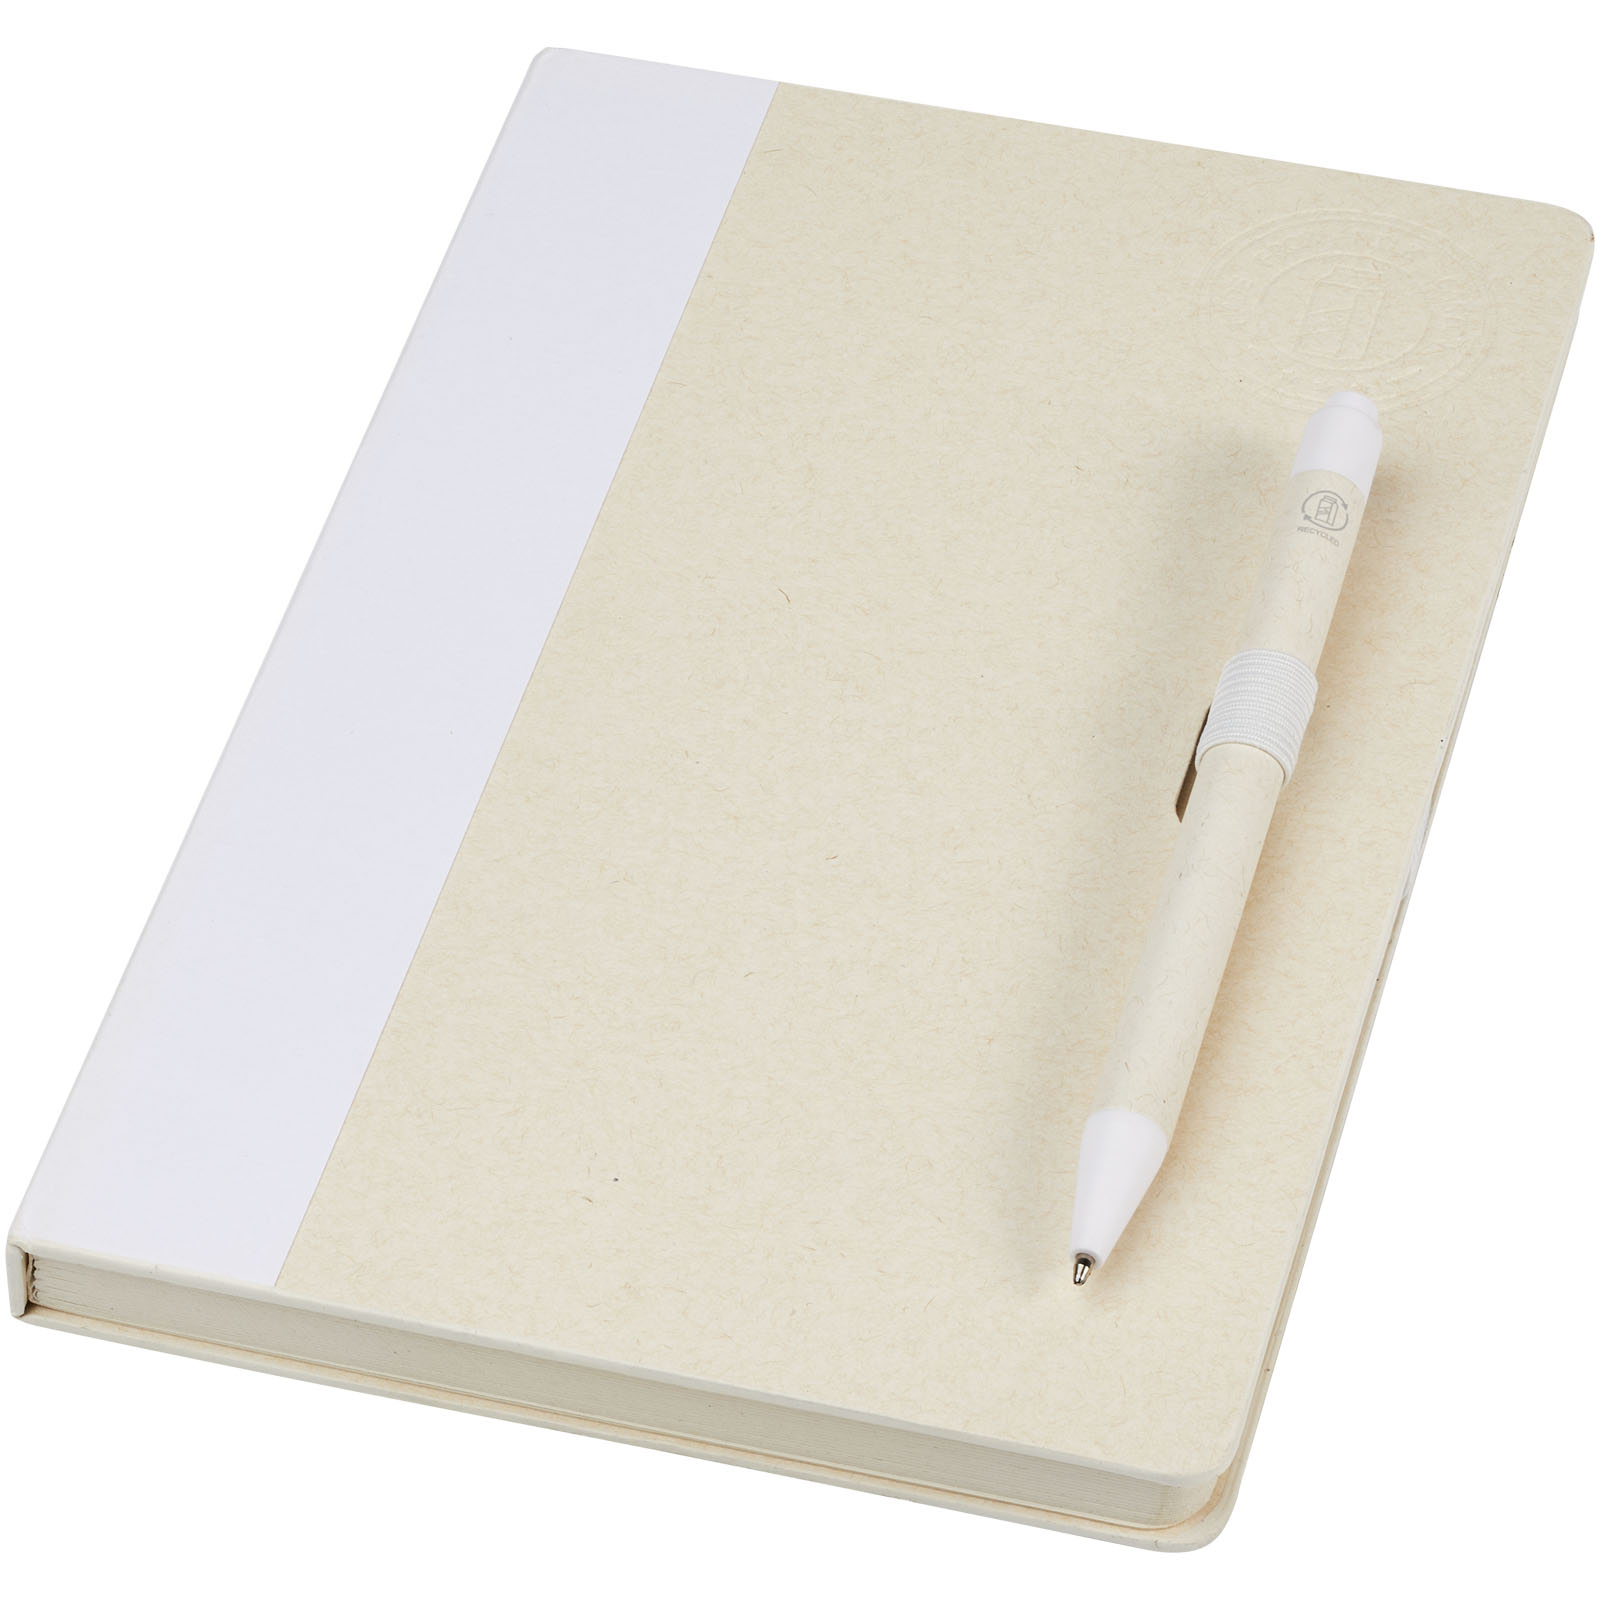 Blocs-notes et essentiels pour le bureau - Ensemble carnet de notes format A5 et stylo bille, à partir de briques de lait recyclées, Dairy Dream